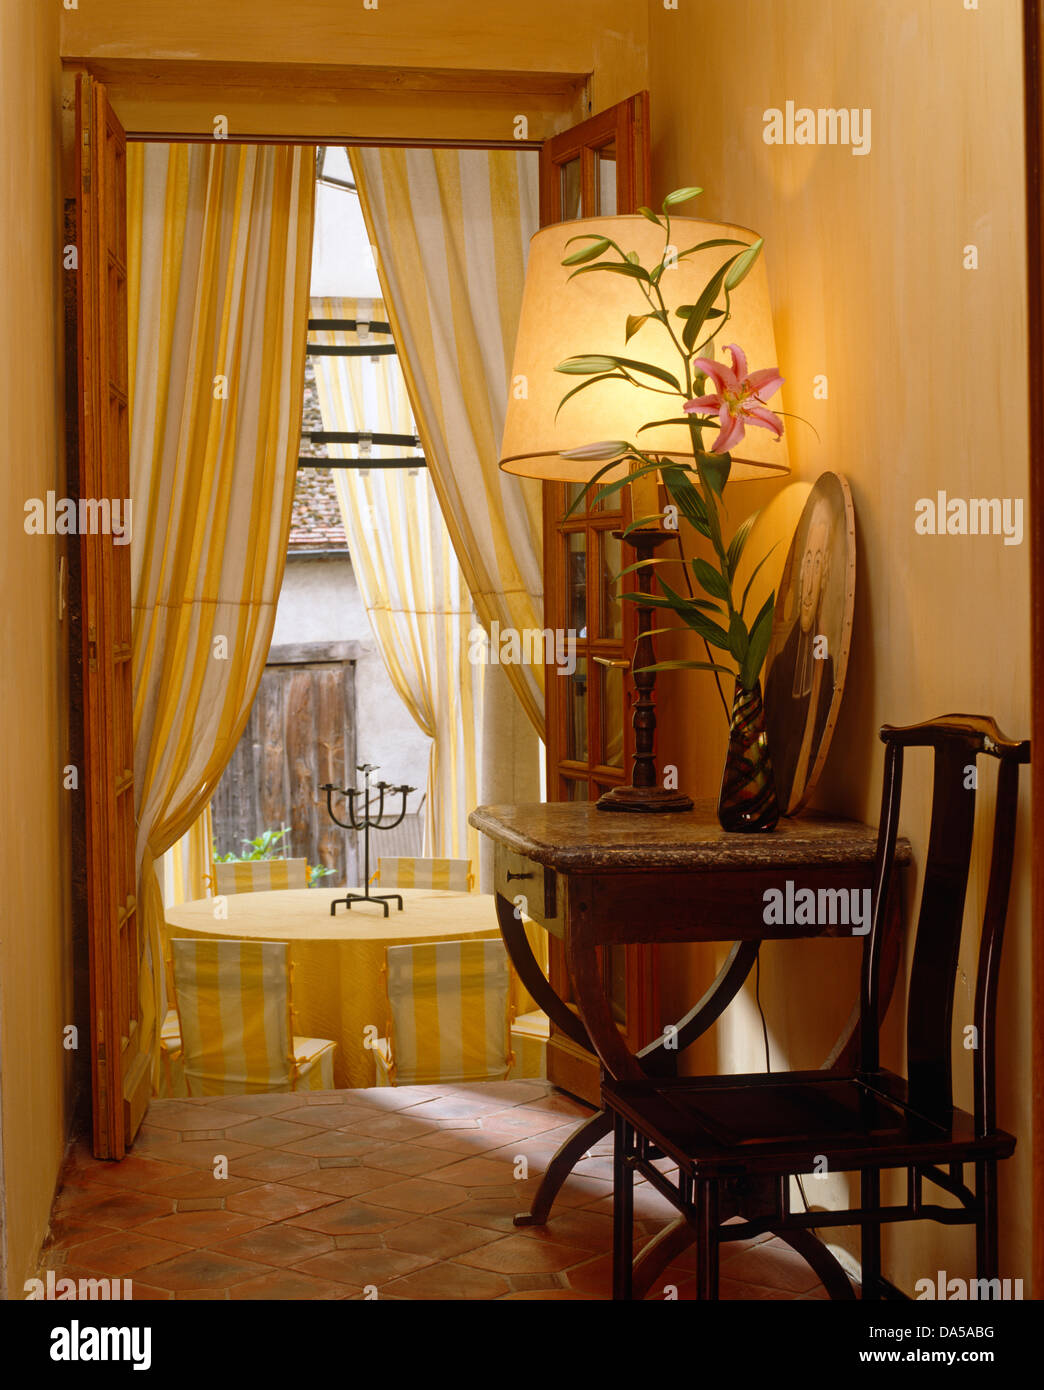 Chaise et table en bois ancien avec la lampe allumée en français salle avec rideaux à rayures jaunes sur porte de salle à manger Banque D'Images